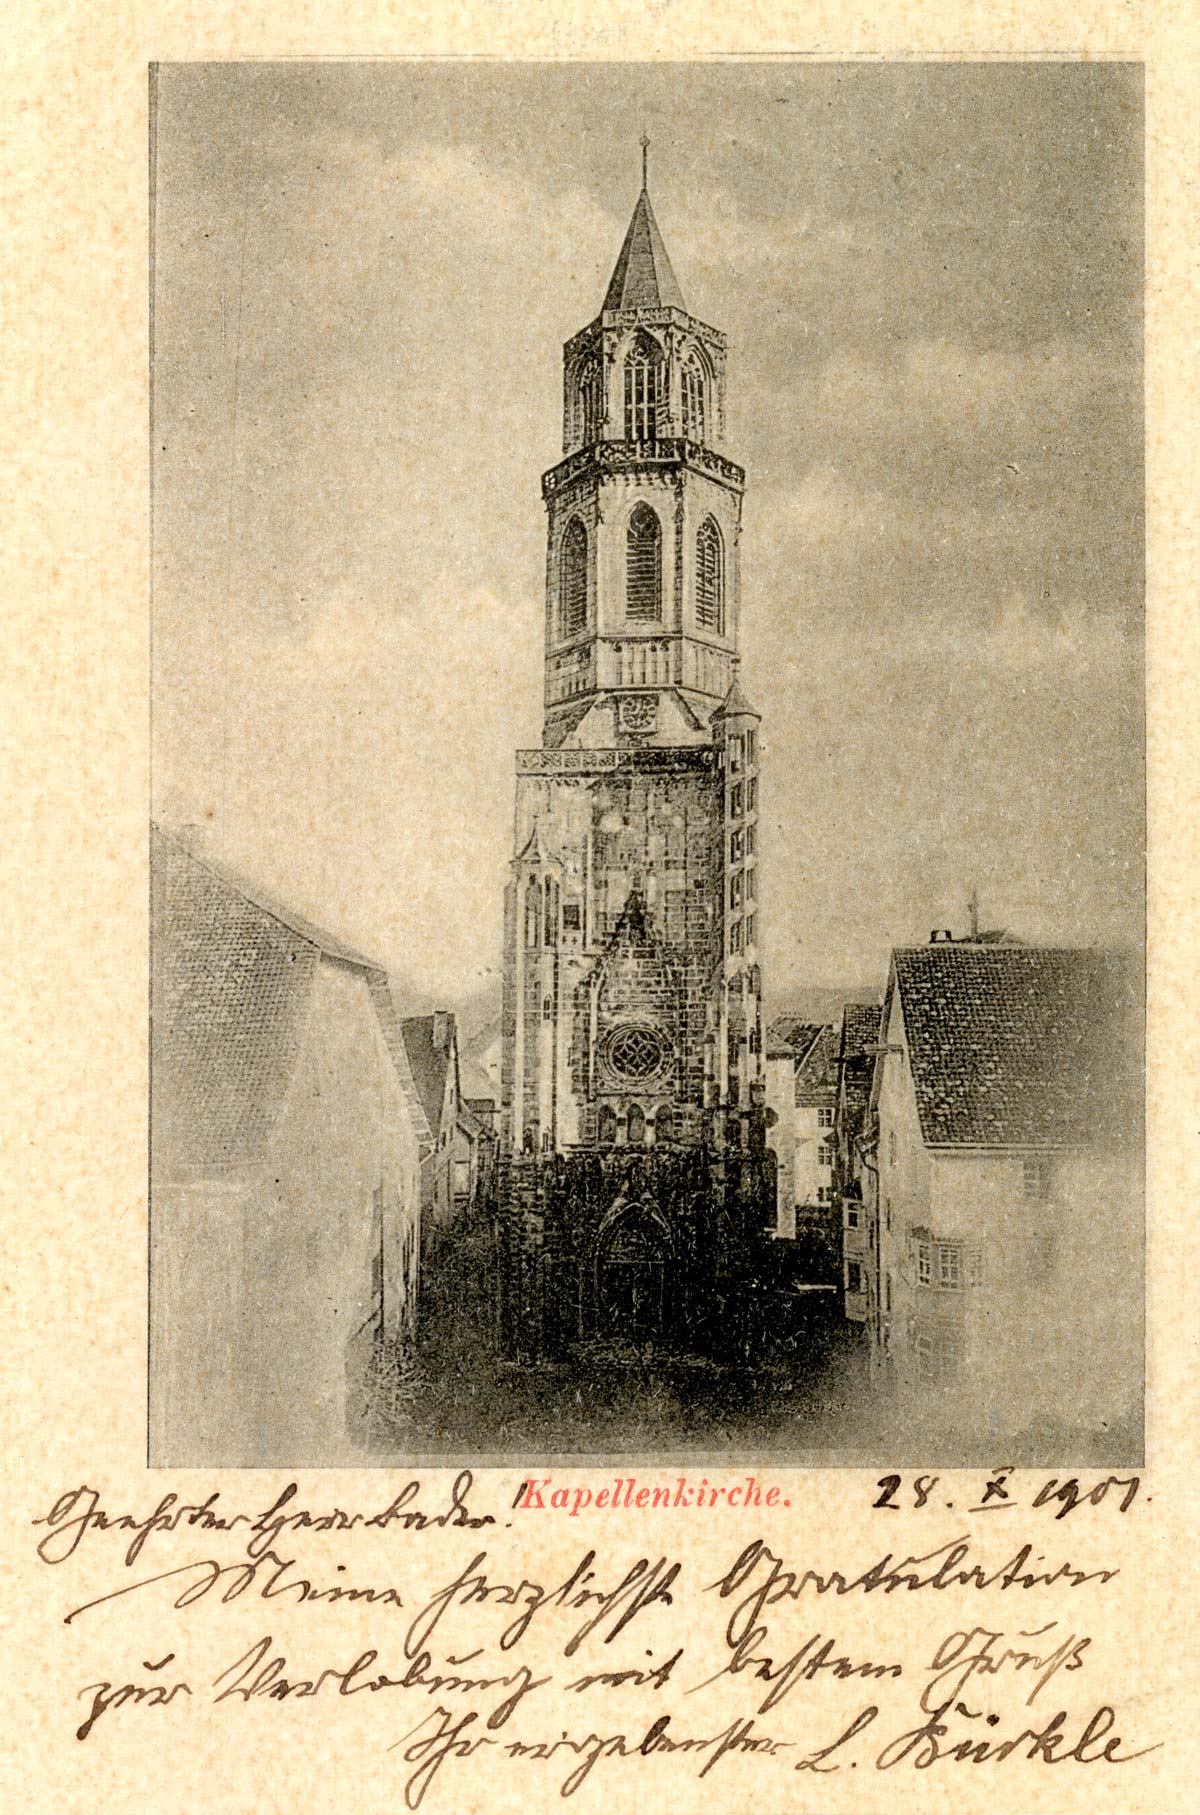 Historisches Foto der Kapellenkirche von 1907